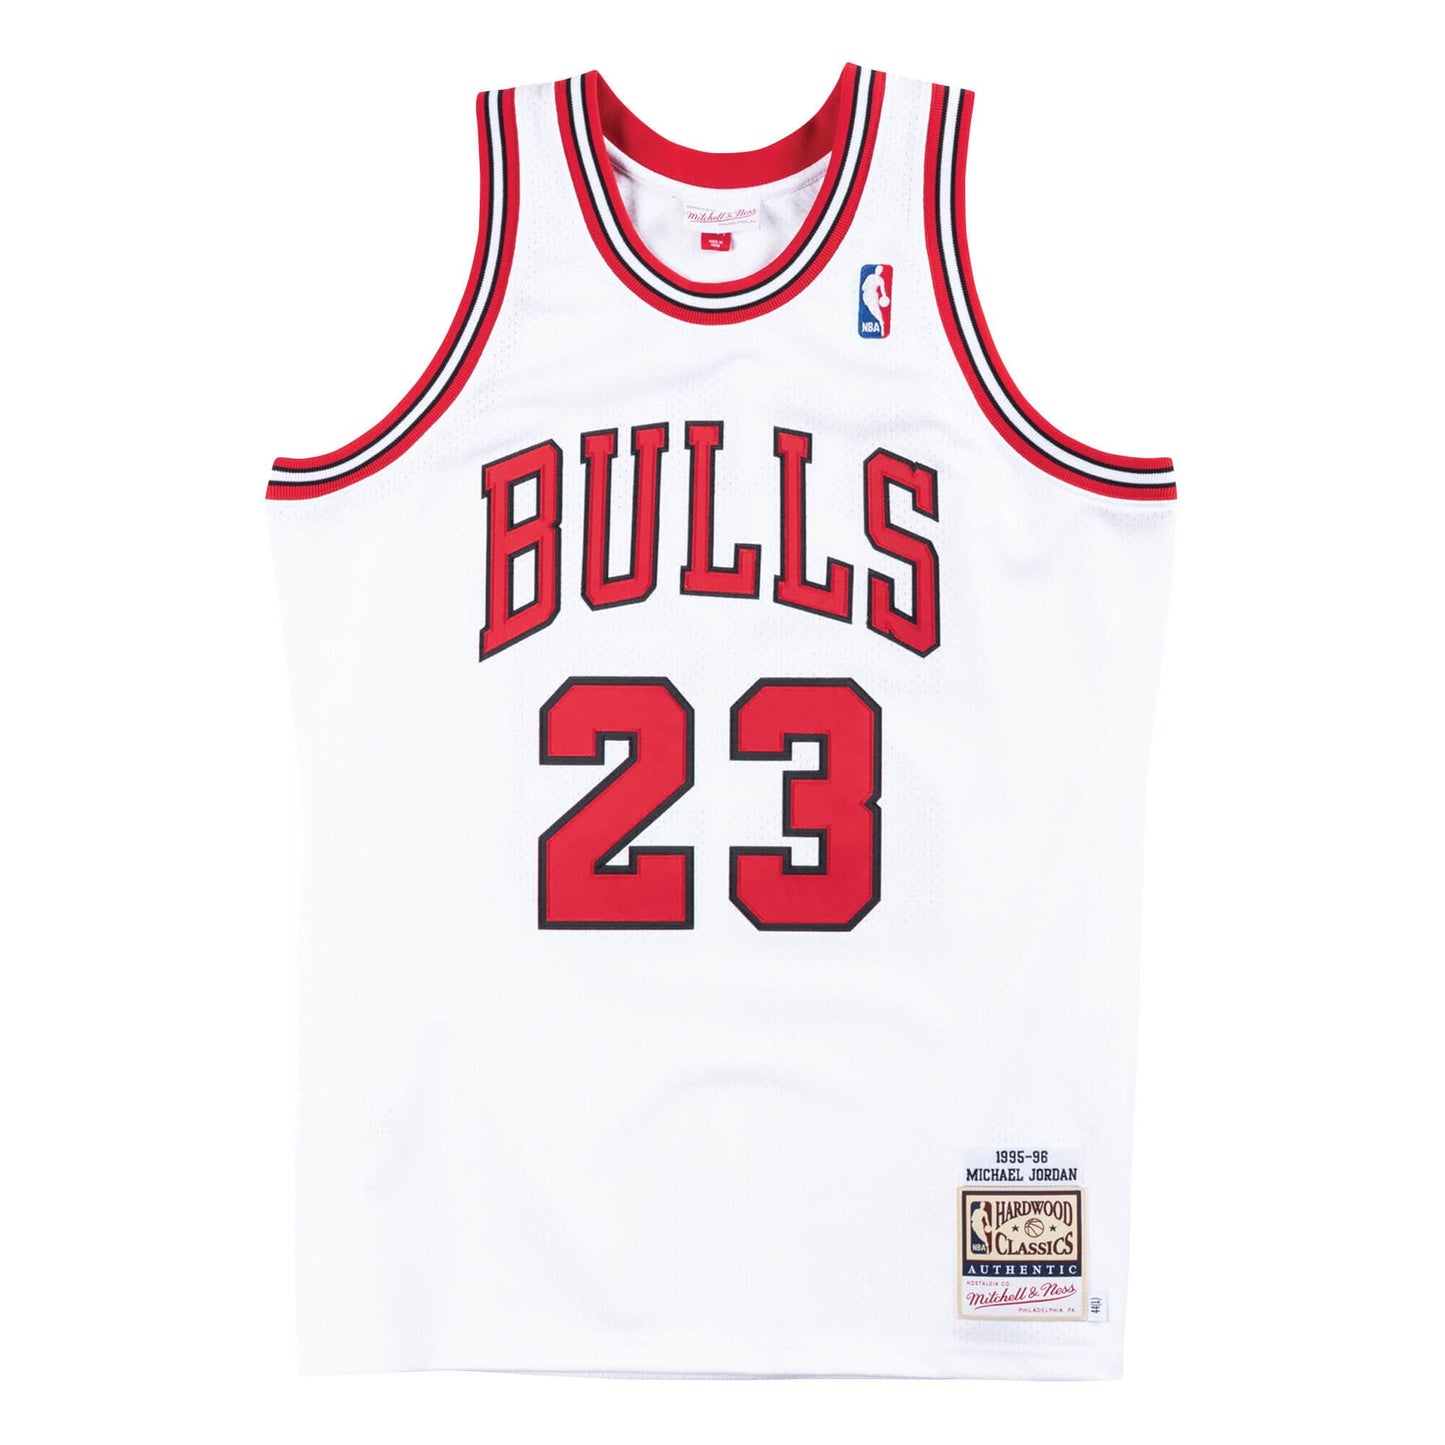 Authentic Jersey Chicago Bulls Home 1995-96 Michael Jordans